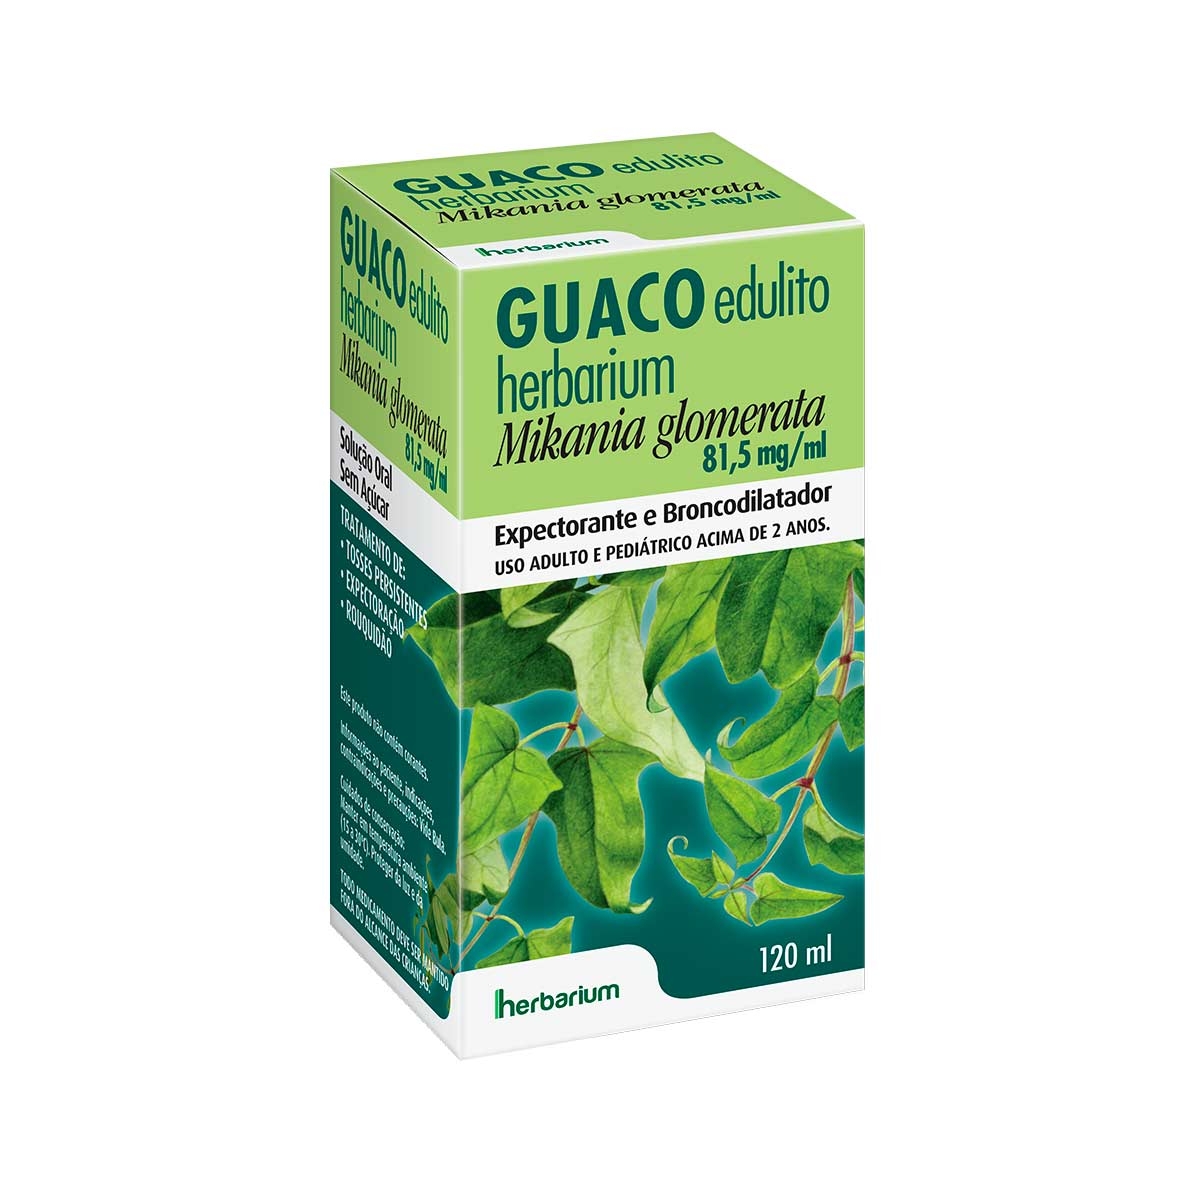 PrinceFar Fátima - O Guaconat Xarope de Guaco é um expectorante,  broncodilatador que age aliviando sintomas relacionados a problemas  respiratórios como tosses e bronquite, além de ser um medicamento  fitoterápico natural. Na